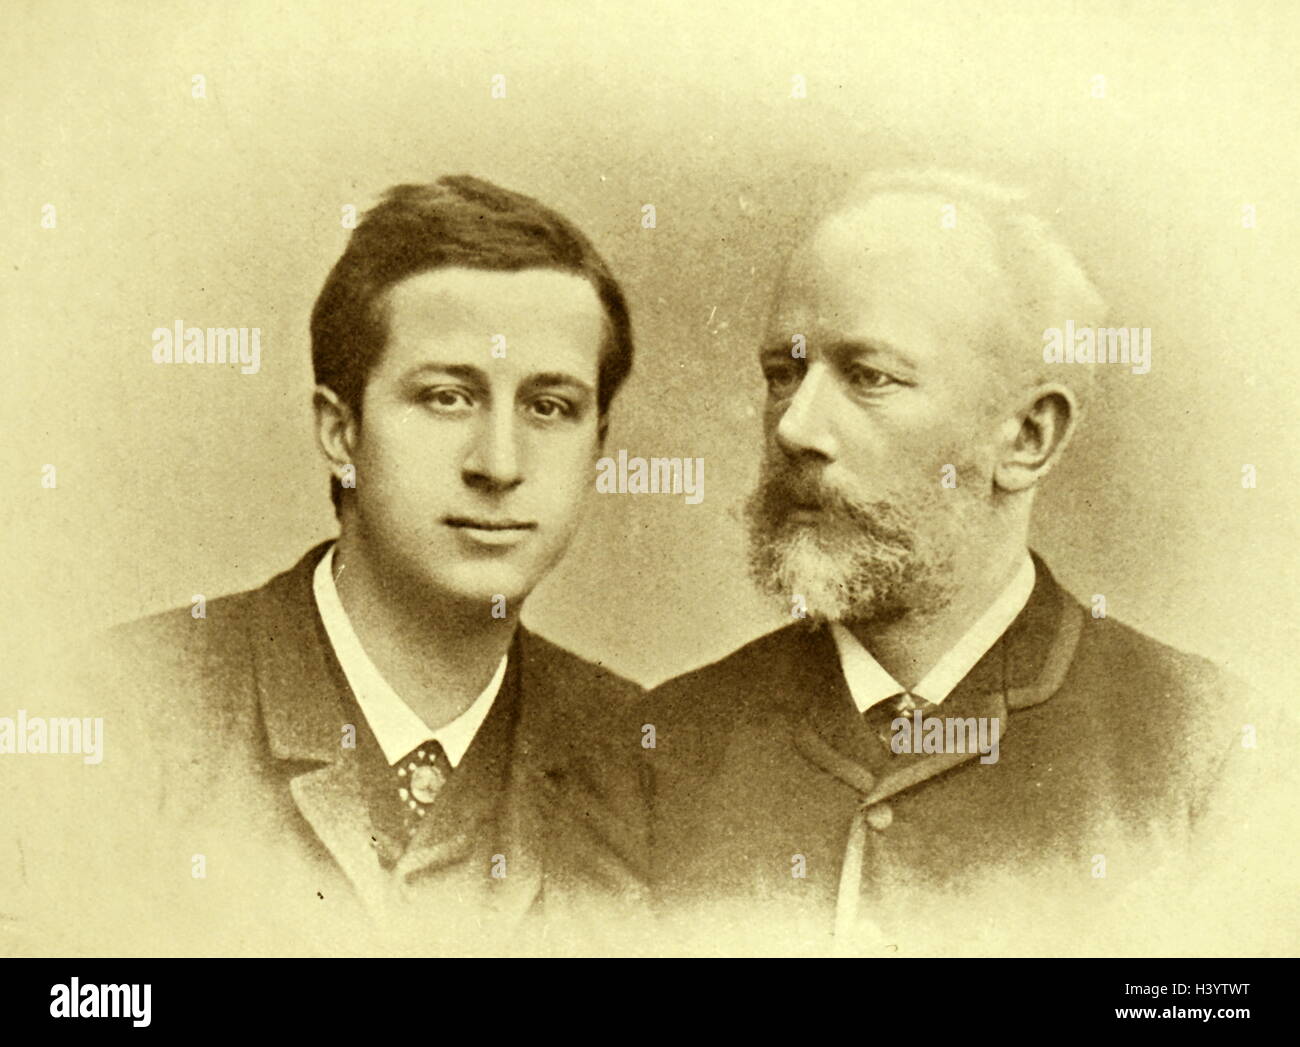 Photographie d'Alexander Siloti (1863-1945) un pianiste, compositeur et chef d'orchestre, et de Piotr Ilitch Tchaïkovski (1840-1893), un compositeur russe de la fin de l'époque romantique. En date du 19e siècle Banque D'Images